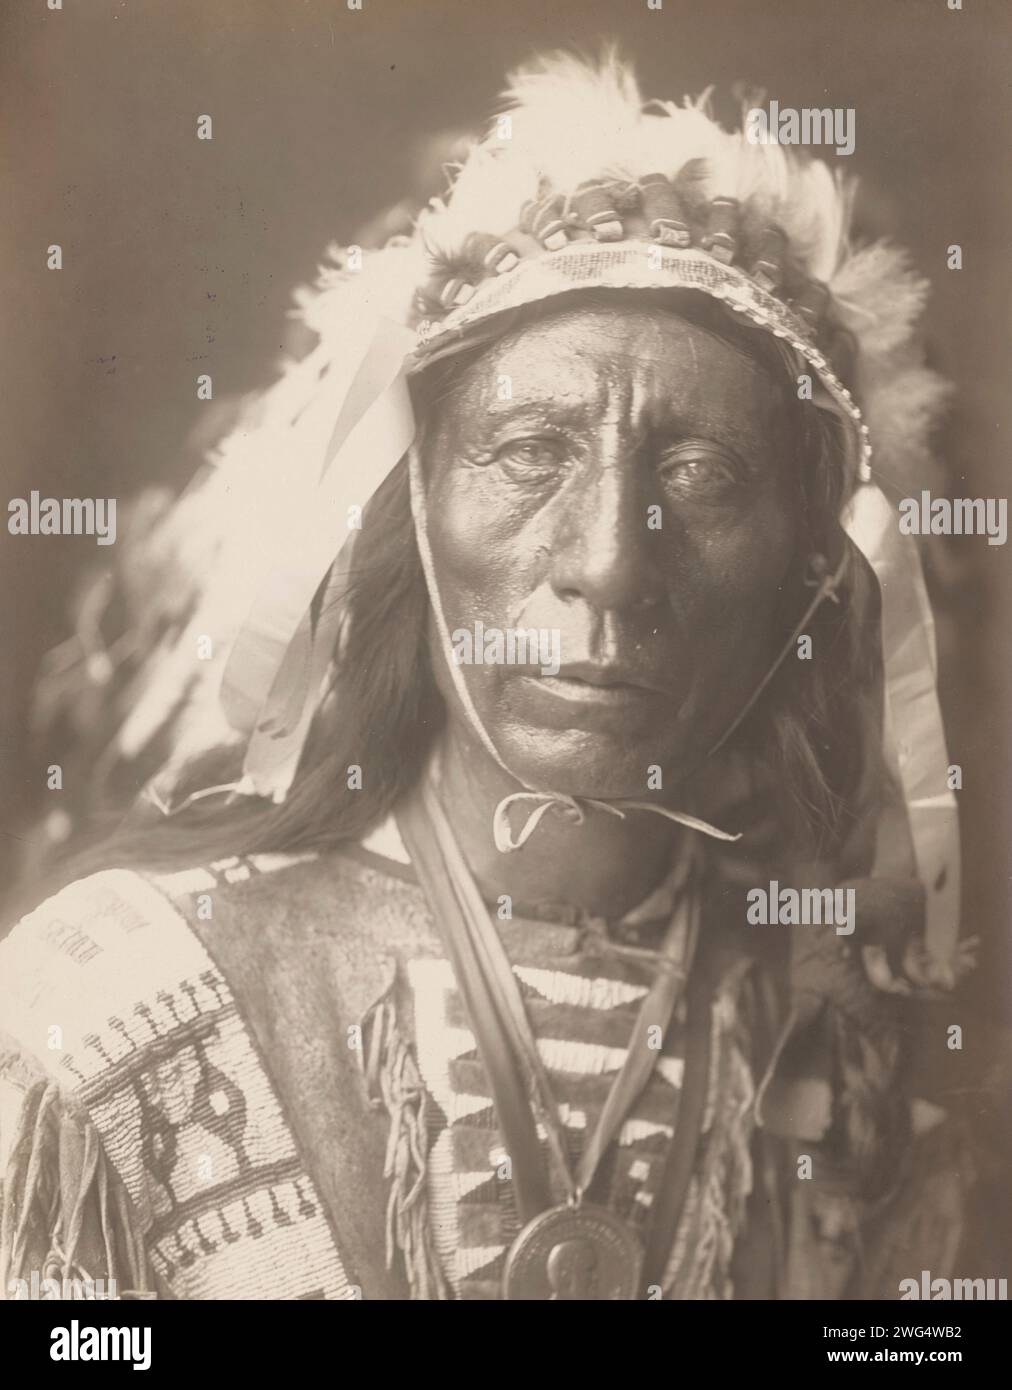 Jack Red Cloud, 1907. La photographie montre le portrait tête et épaules de Jack Red Cloud, debout, portant une coiffe complète, des vêtements traditionnels et un médaillon, face à l'avant. Banque D'Images